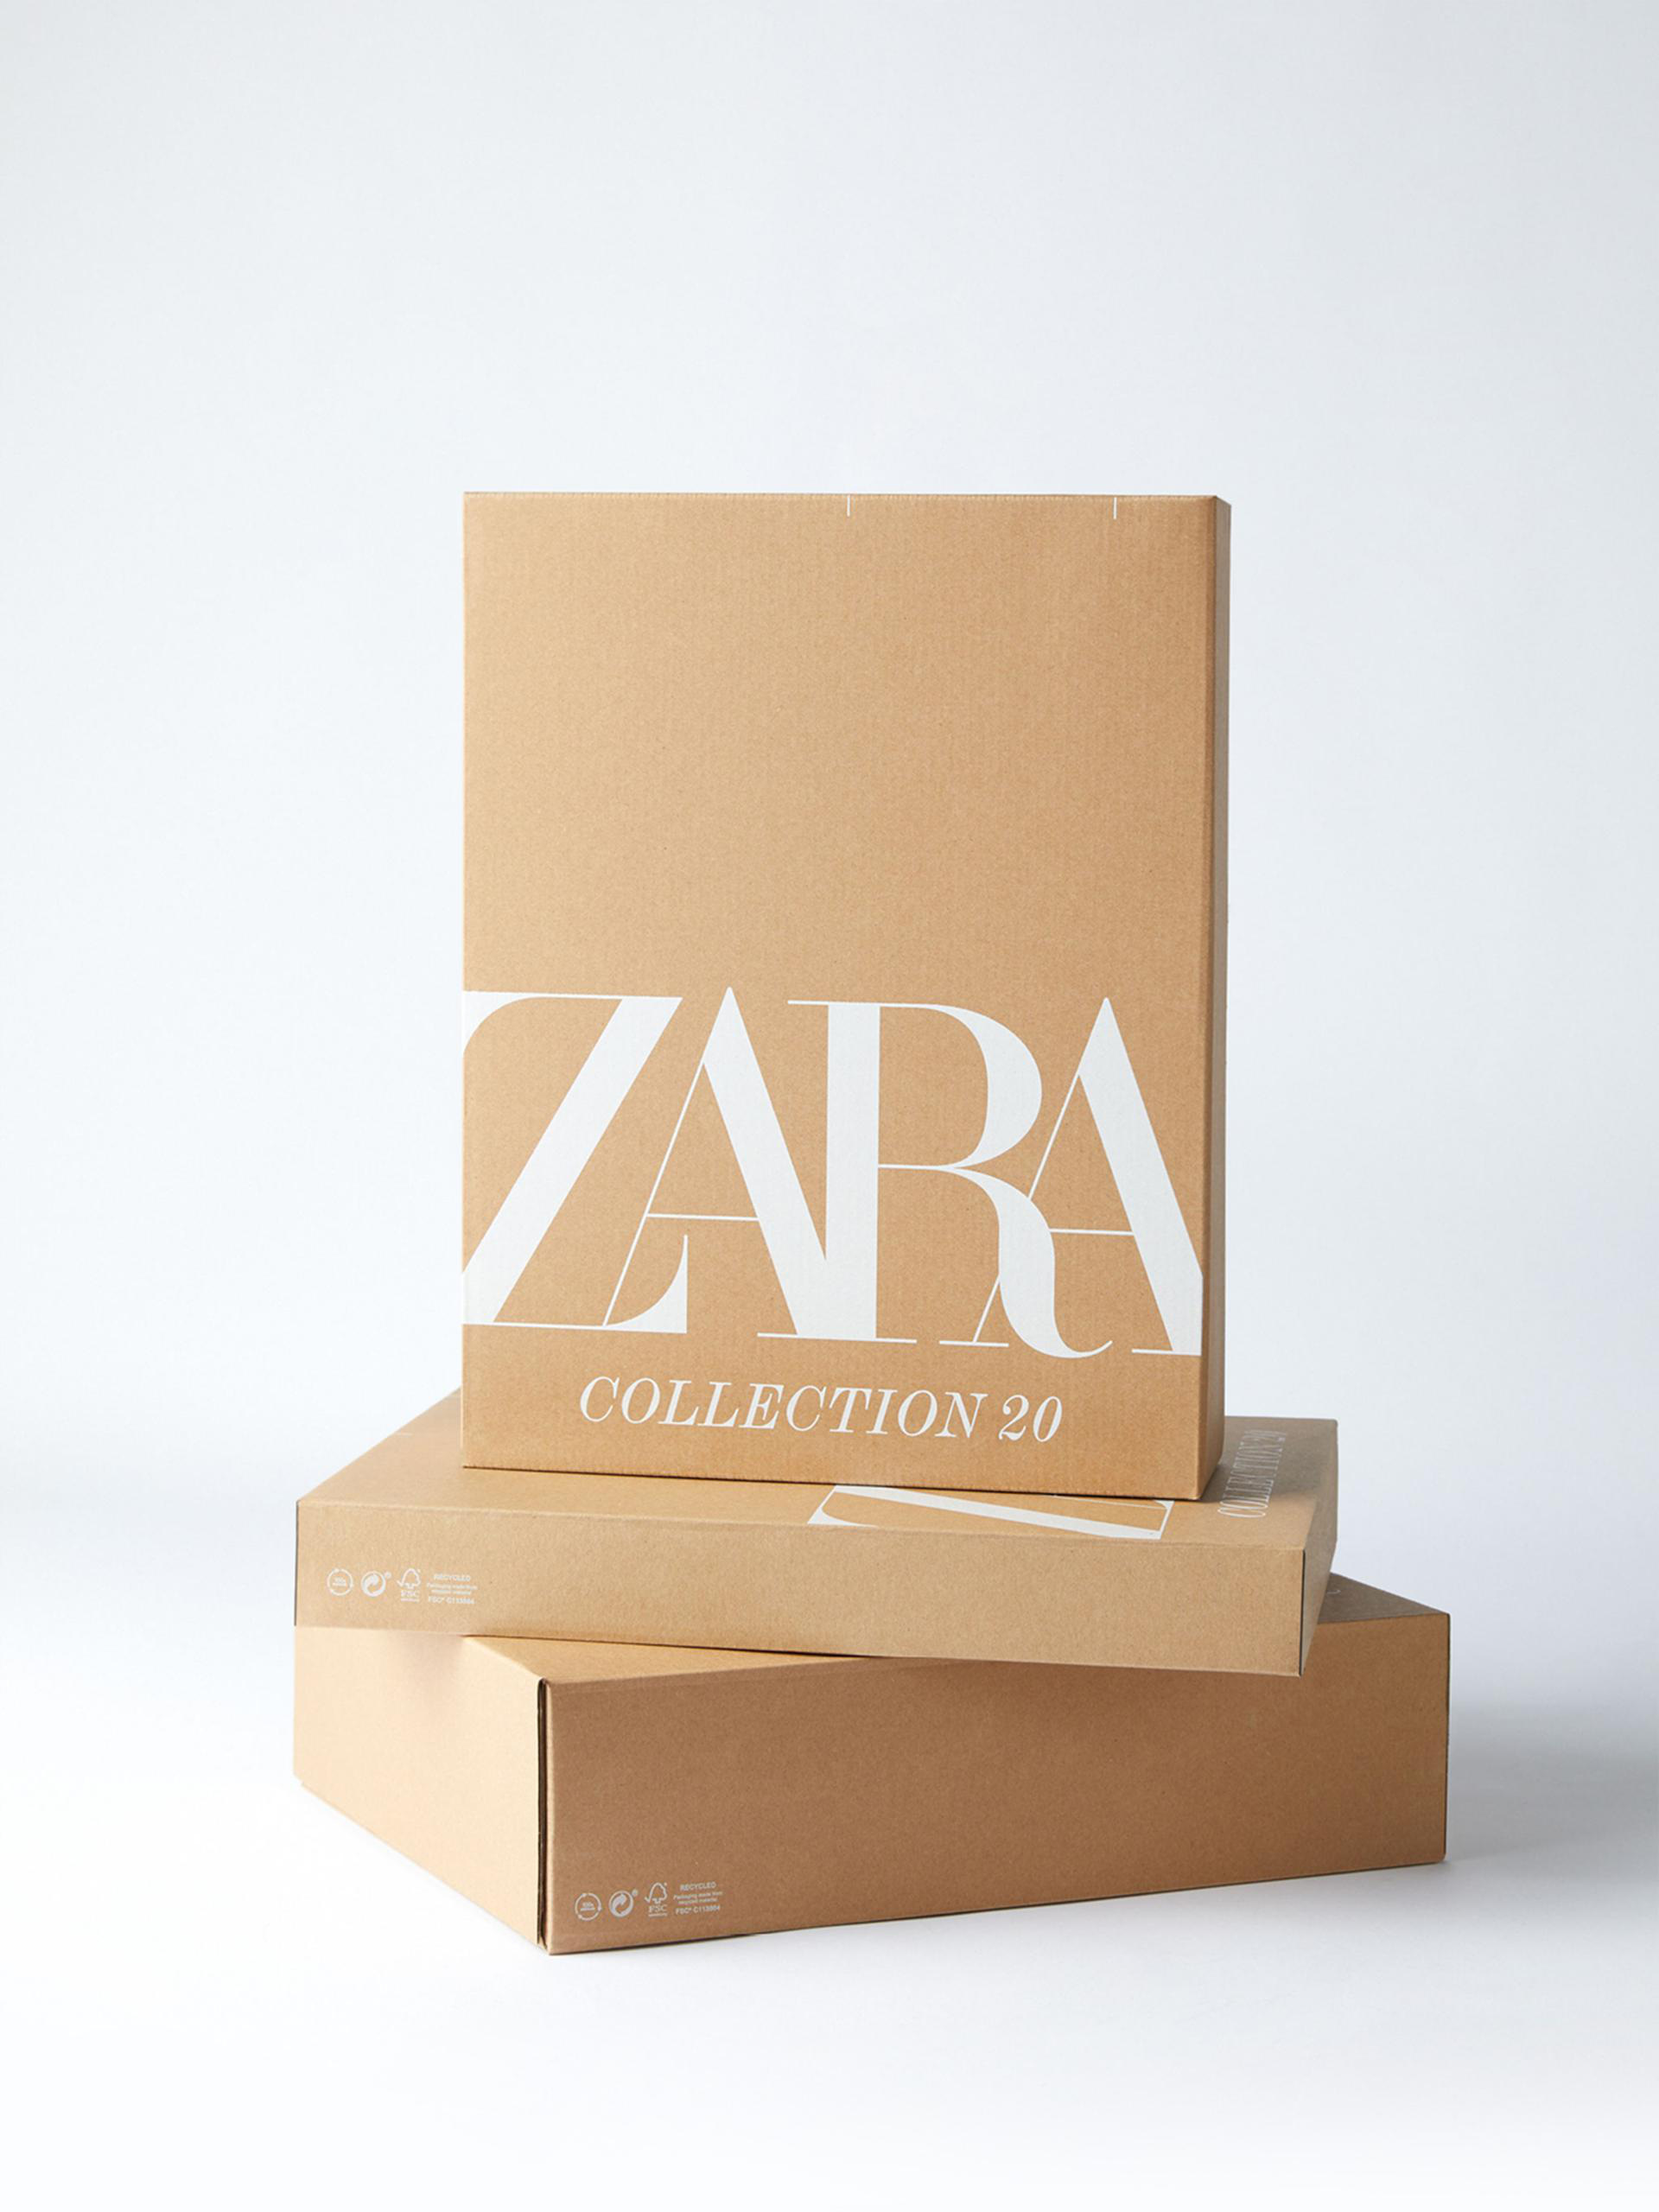 Zara đóng cửa 1.200 cửa hàng trên toàn cầu trong vòng 2 năm tới - Ảnh 2.